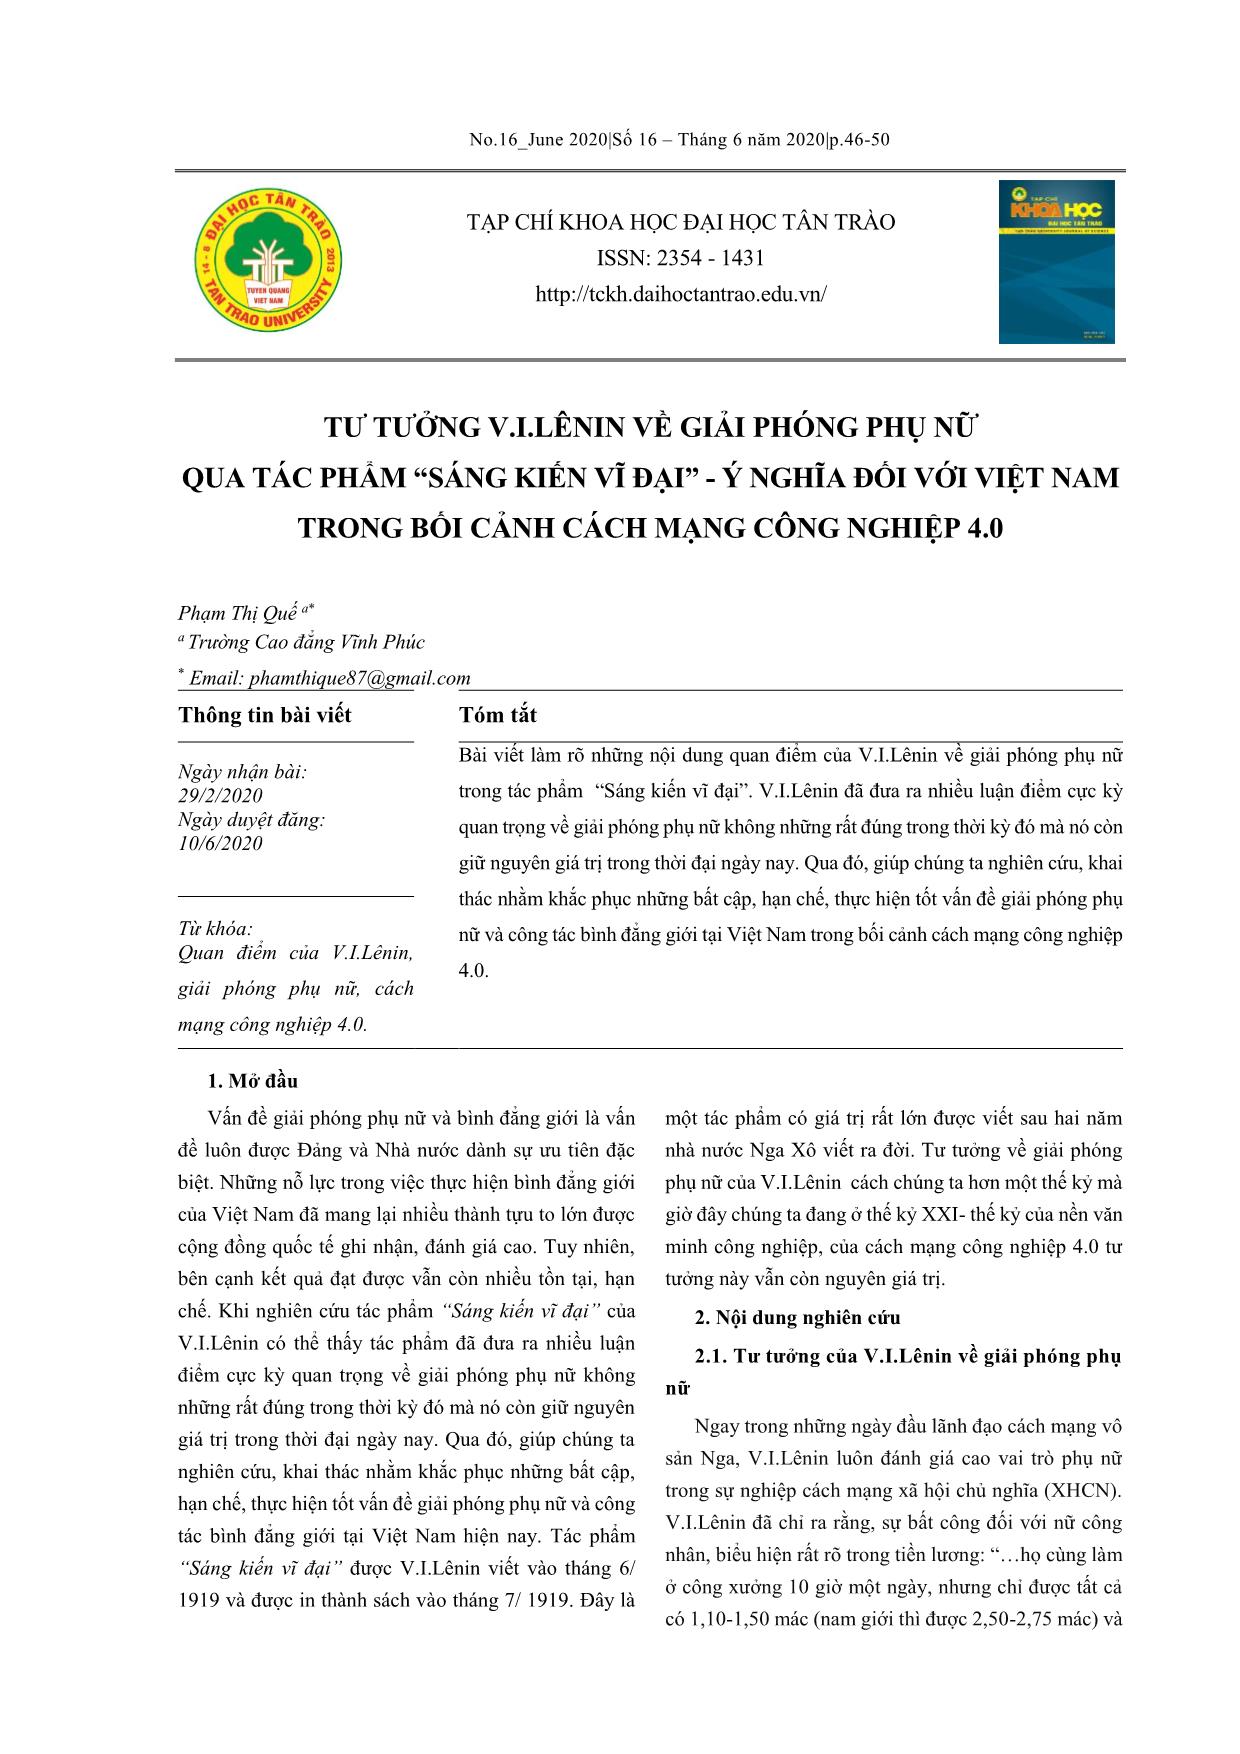 Tư tưởng V.I.Lênin về giải phóng phụ nữ qua tác phẩm “Sáng kiến vĩ đại” - Ý nghĩa đối với Việt Nam trong bối cảnh cách mạng công nghiệp 4.0 trang 1